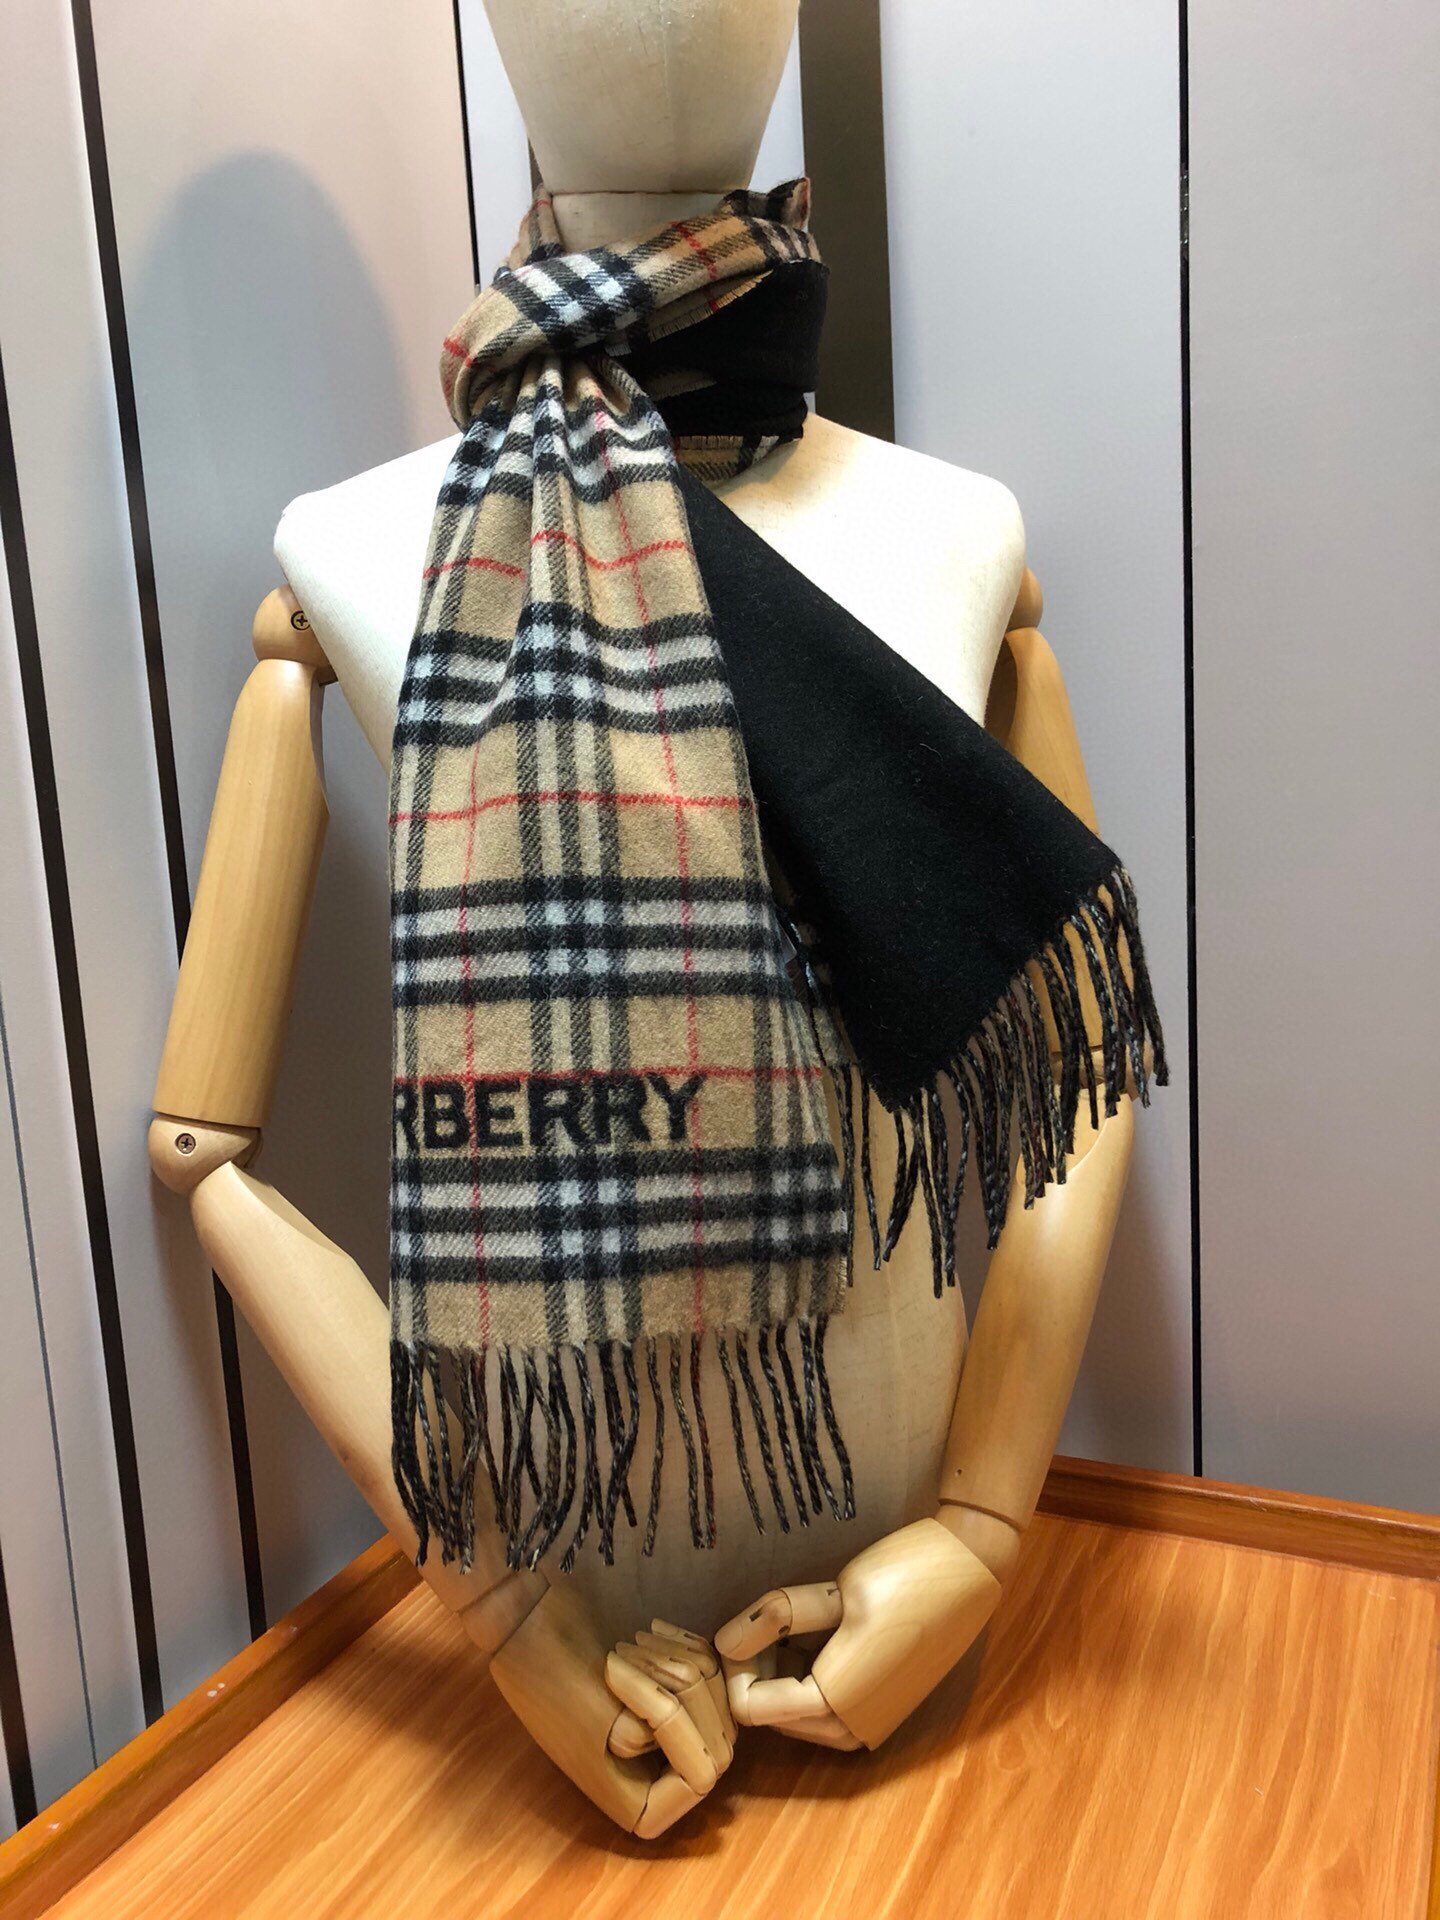 Burberry巴宝莉双面两用格纹羊绒围巾️2023最新款爆款舒适的围巾选用柔软羊绒面料打造产自拥有20